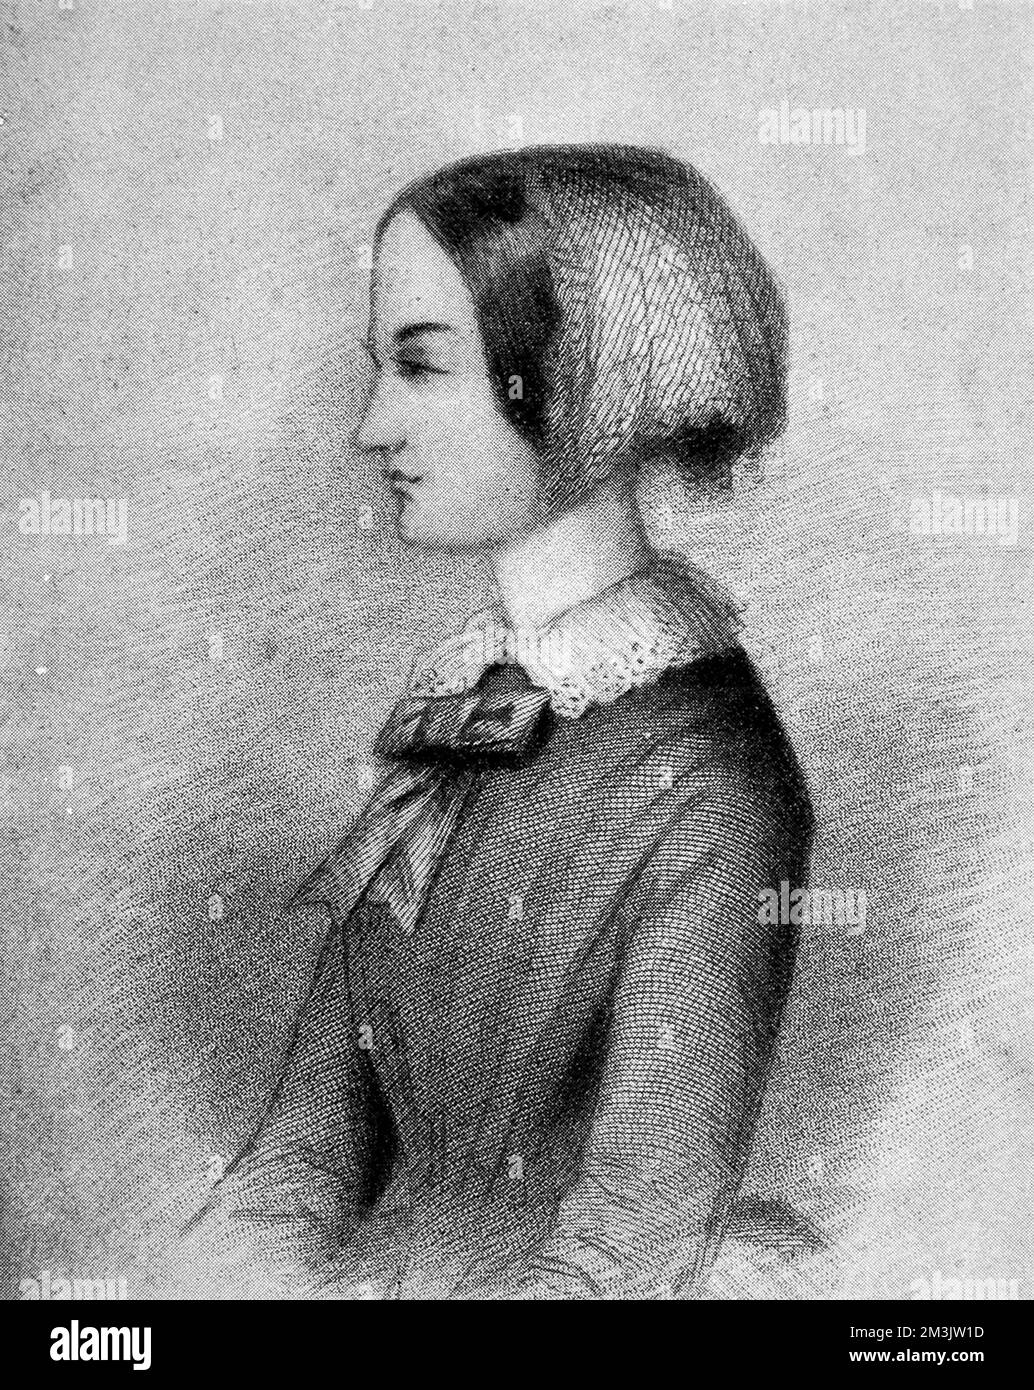 Florence Nightingale (1820 - 1910) wurde in Italien geboren. Sie zog mit ihrer wohlhabenden Familie nach England und wurde zu Hause von ihrem Vater ausgebildet. Obwohl es für Frauen von Florenz sozialem Ansehen nicht angemessen war, Krankenschwestern zu werden, glaubte sie, dass es für sie Gottes gewählter Weg sei. Sie trainierte in Kaiserswerth, in der Nähe von Düsseldorf, und kehrte dann nach England zurück, um einen Posten bei einer Harley Street Operation zu übernehmen. Sie wurde zusammen mit 38 Krankenschwestern in das Barrack Hospital in Scutari geschickt, um medizinische Unterstützung zu leisten. Als sie sich um die Truppen kümmerte, gewann sie viel Aufruhr, indem sie Briefe nach Hause auf das B der Soldaten schrieb Stockfoto